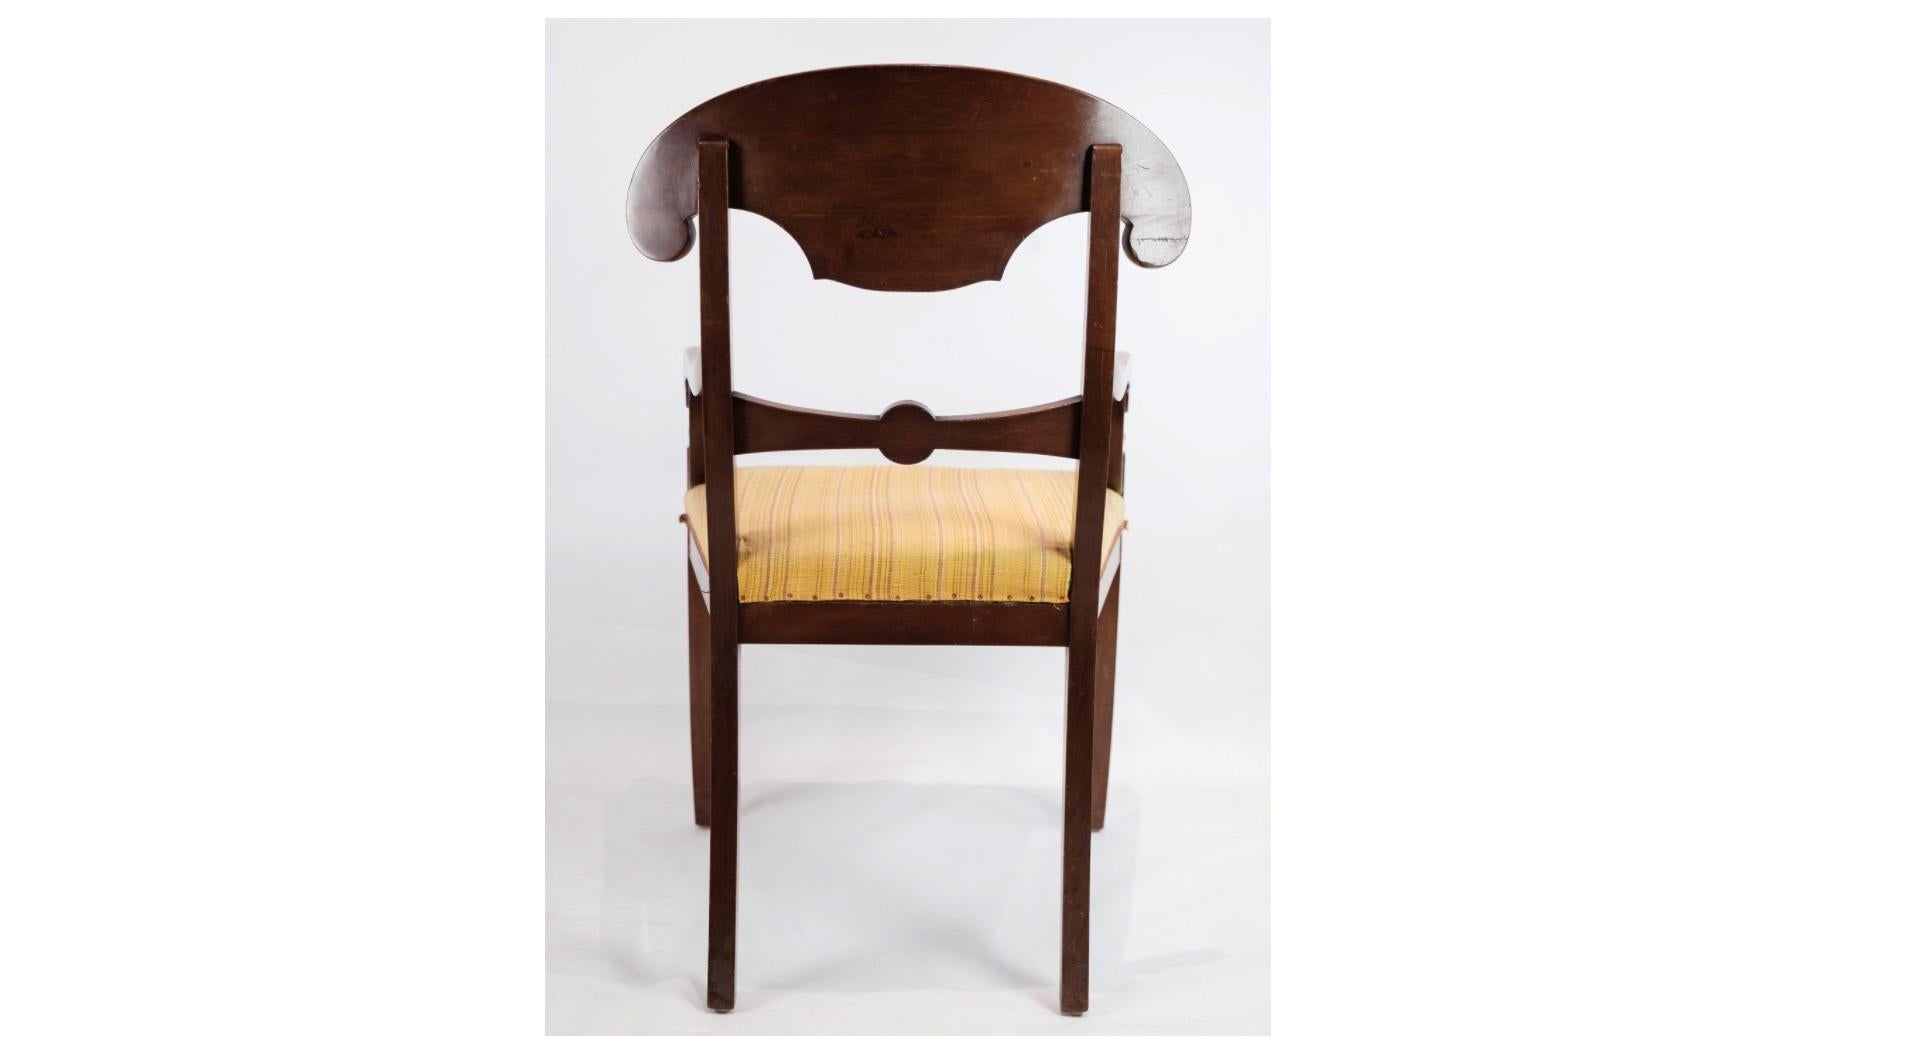 L'ensemble de deux fauteuils en acajou avec tissu léger des années 1860 témoigne de la beauté intemporelle et du savoir-faire des meubles de l'époque victorienne. Fabriqués en bois d'acajou luxueux, réputé pour sa couleur riche et sa durabilité, ces